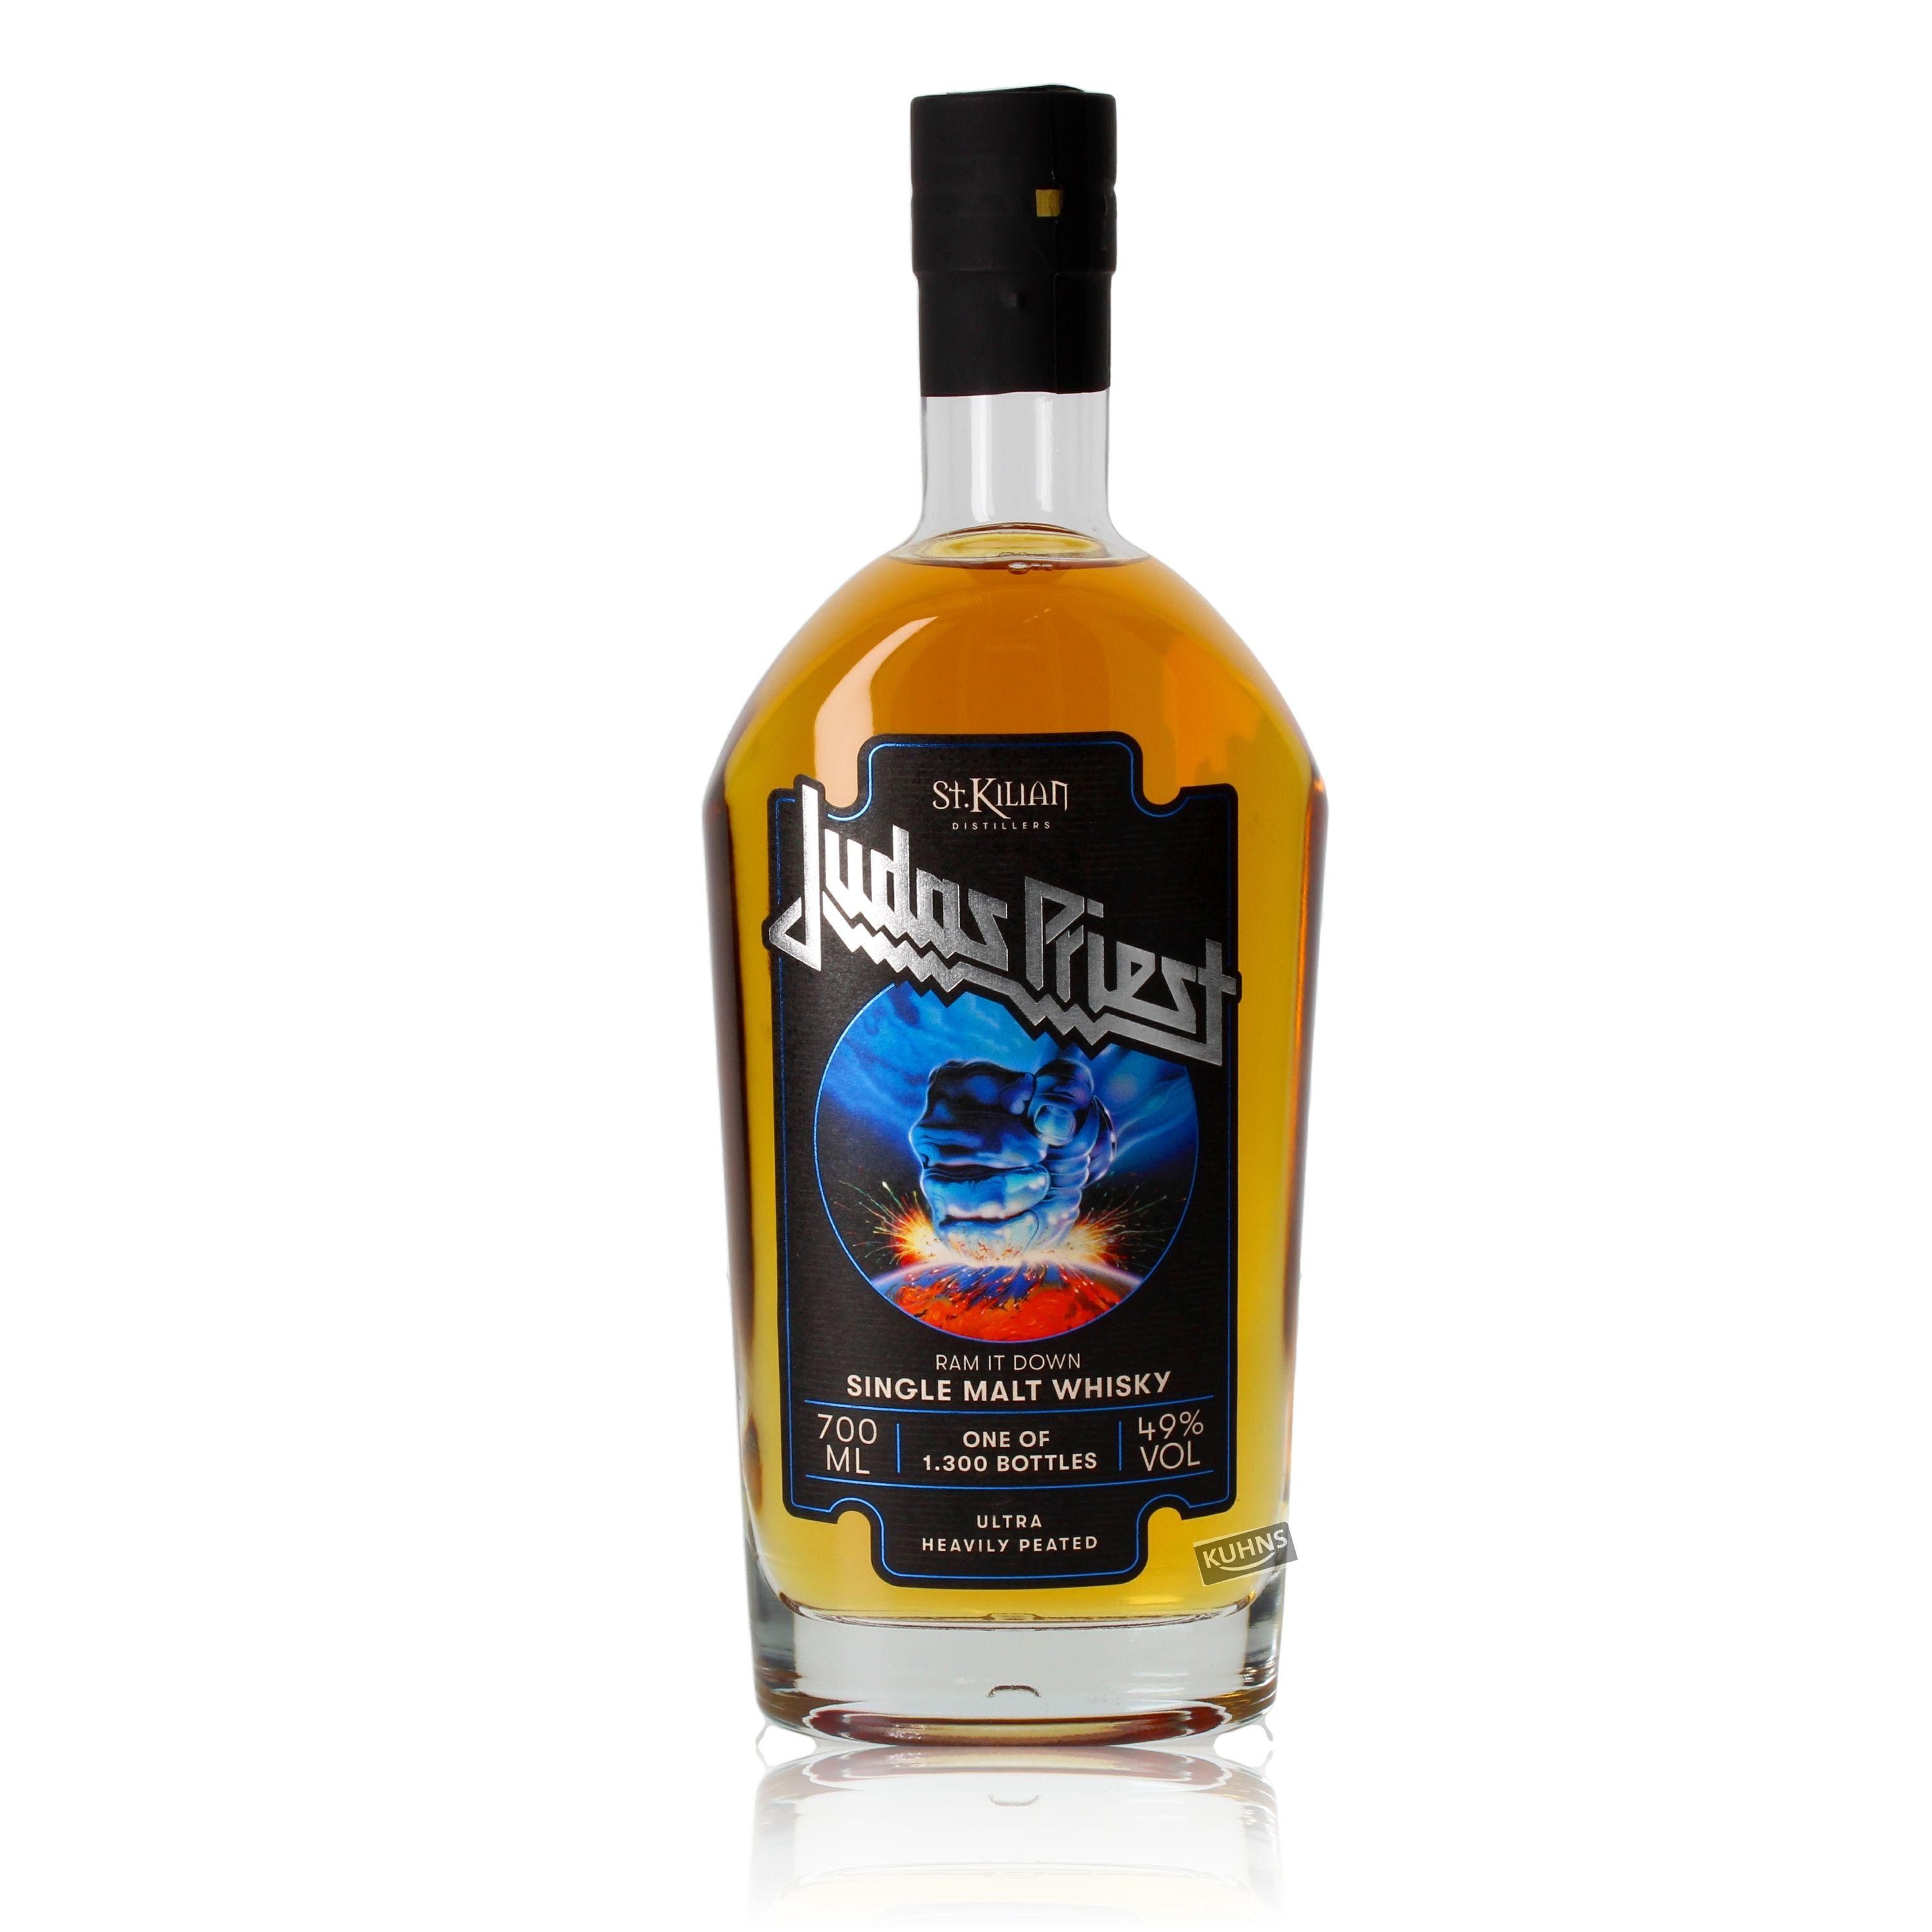 St. Kilian Judas Priest - Ram it Down Single Malt Whisky  0,7l, alc. 49 Vol.-%